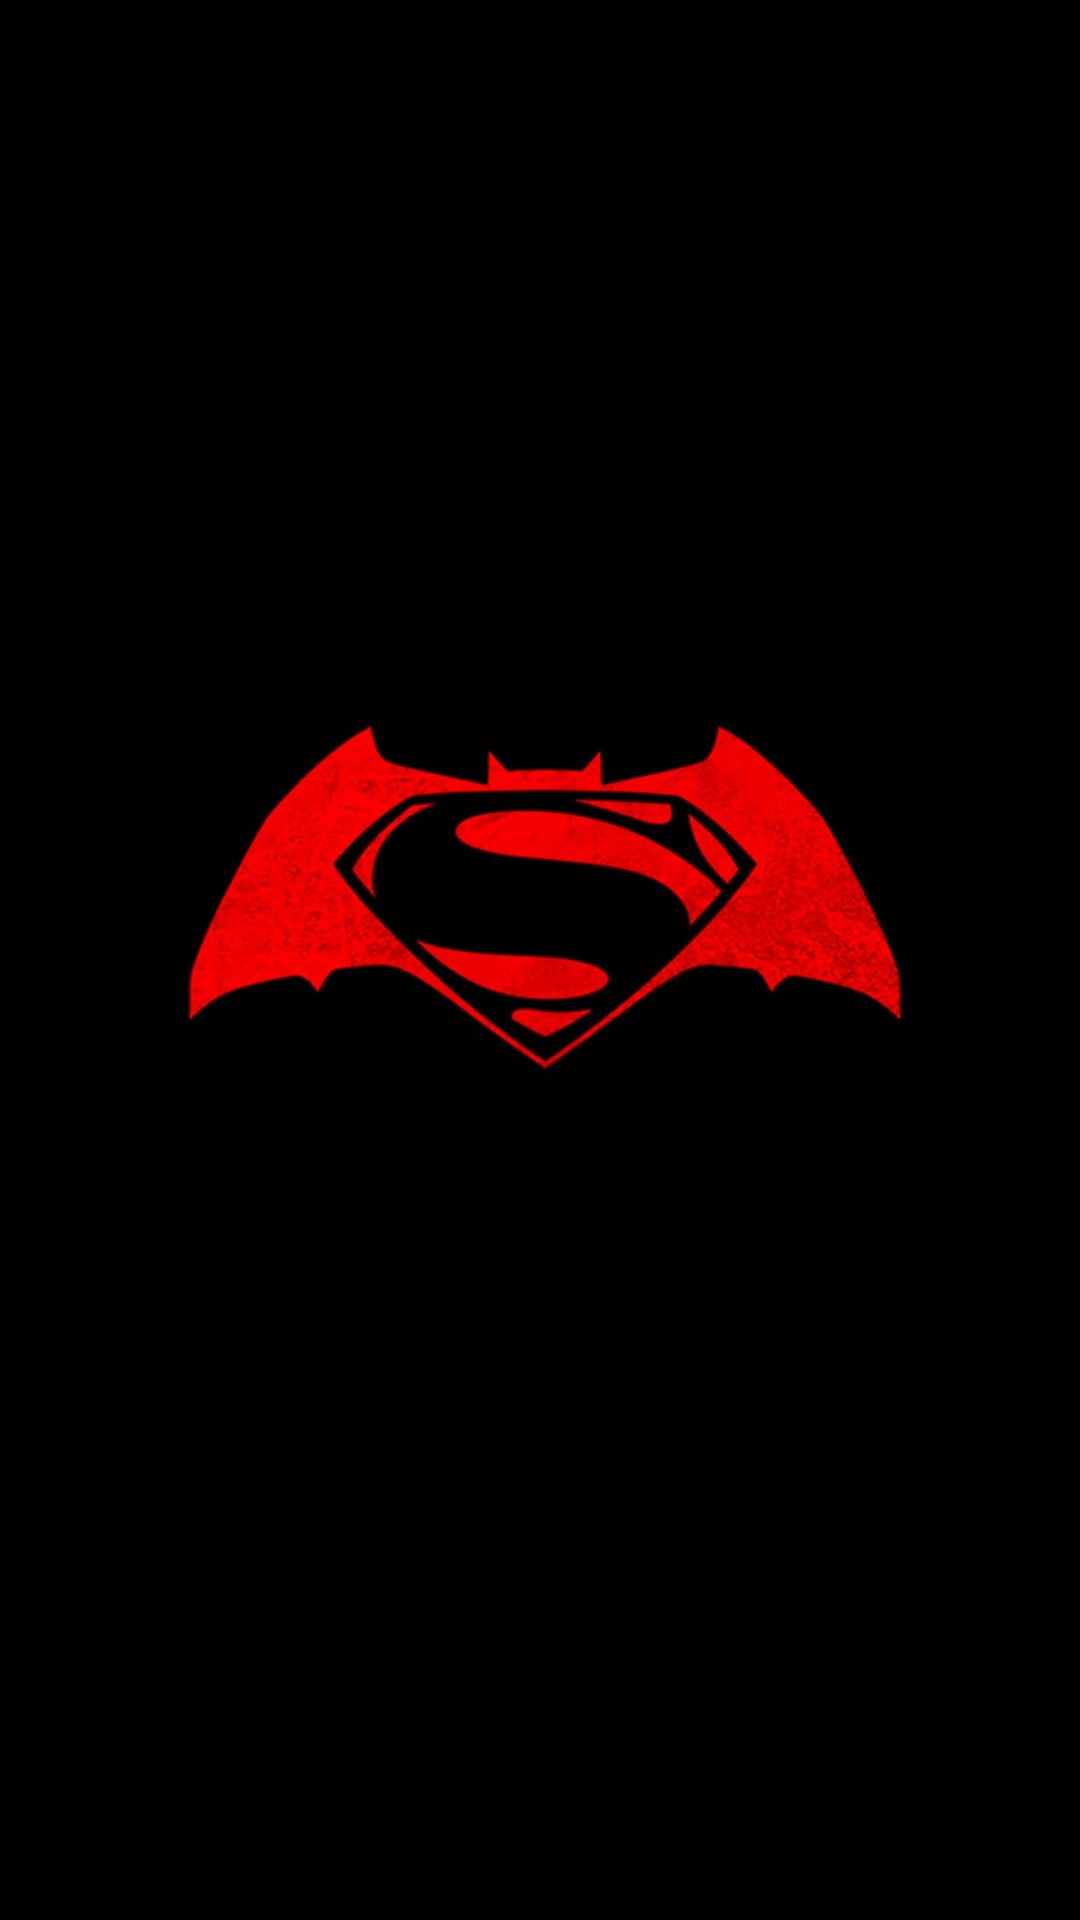 Batman v Superman logo Wallpaper for LG G2